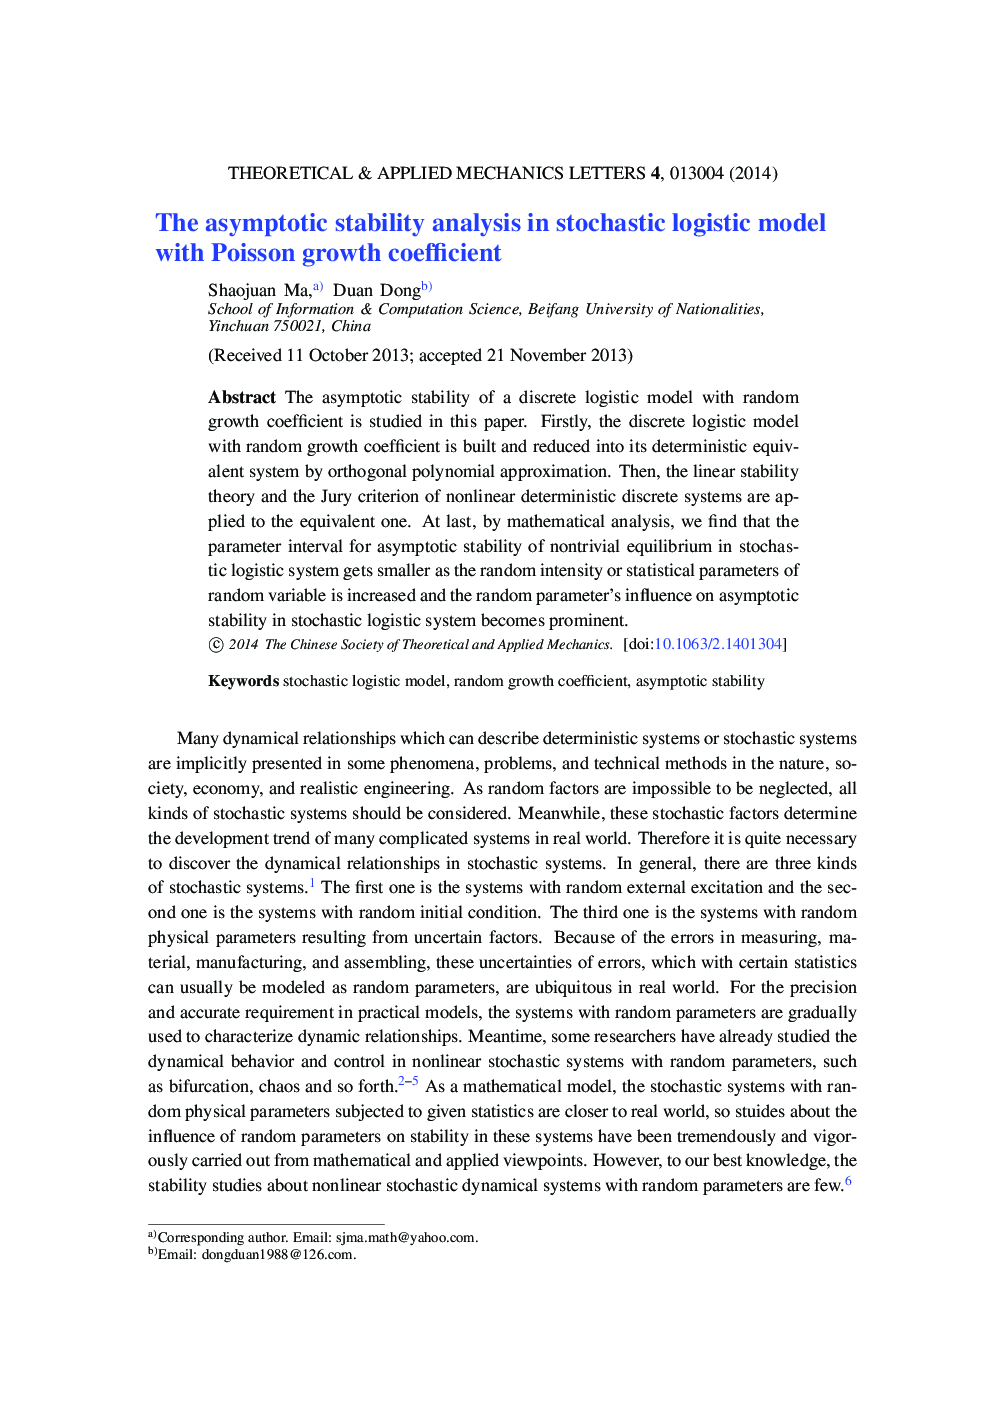 تجزیه و تحلیل پایداری آسیایپتواتیک در مدل لجستیک تصادفی با ضریب رشد پواسون 